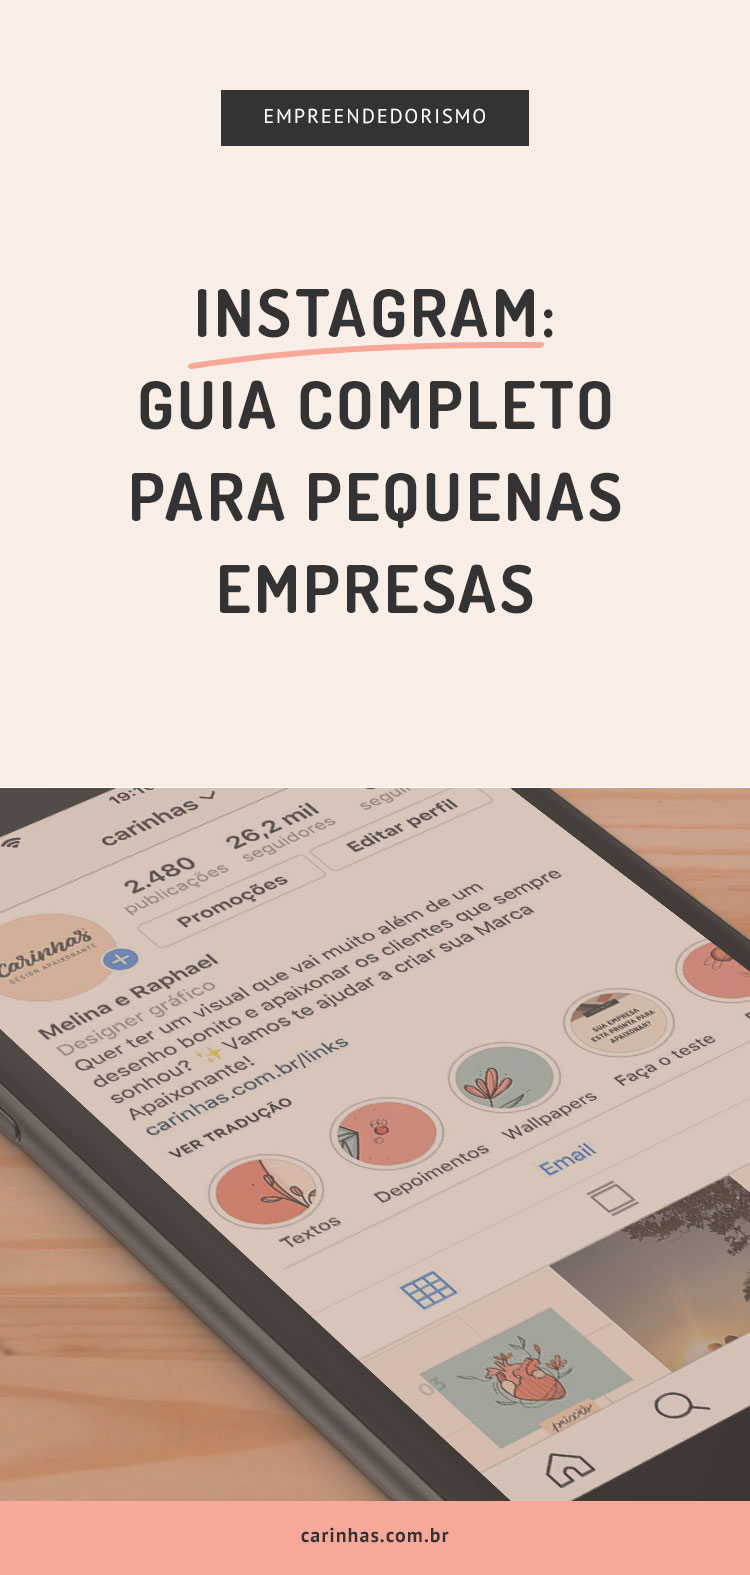 Instagram: Guia Completo para pequenas empresas - carinhas.com.br